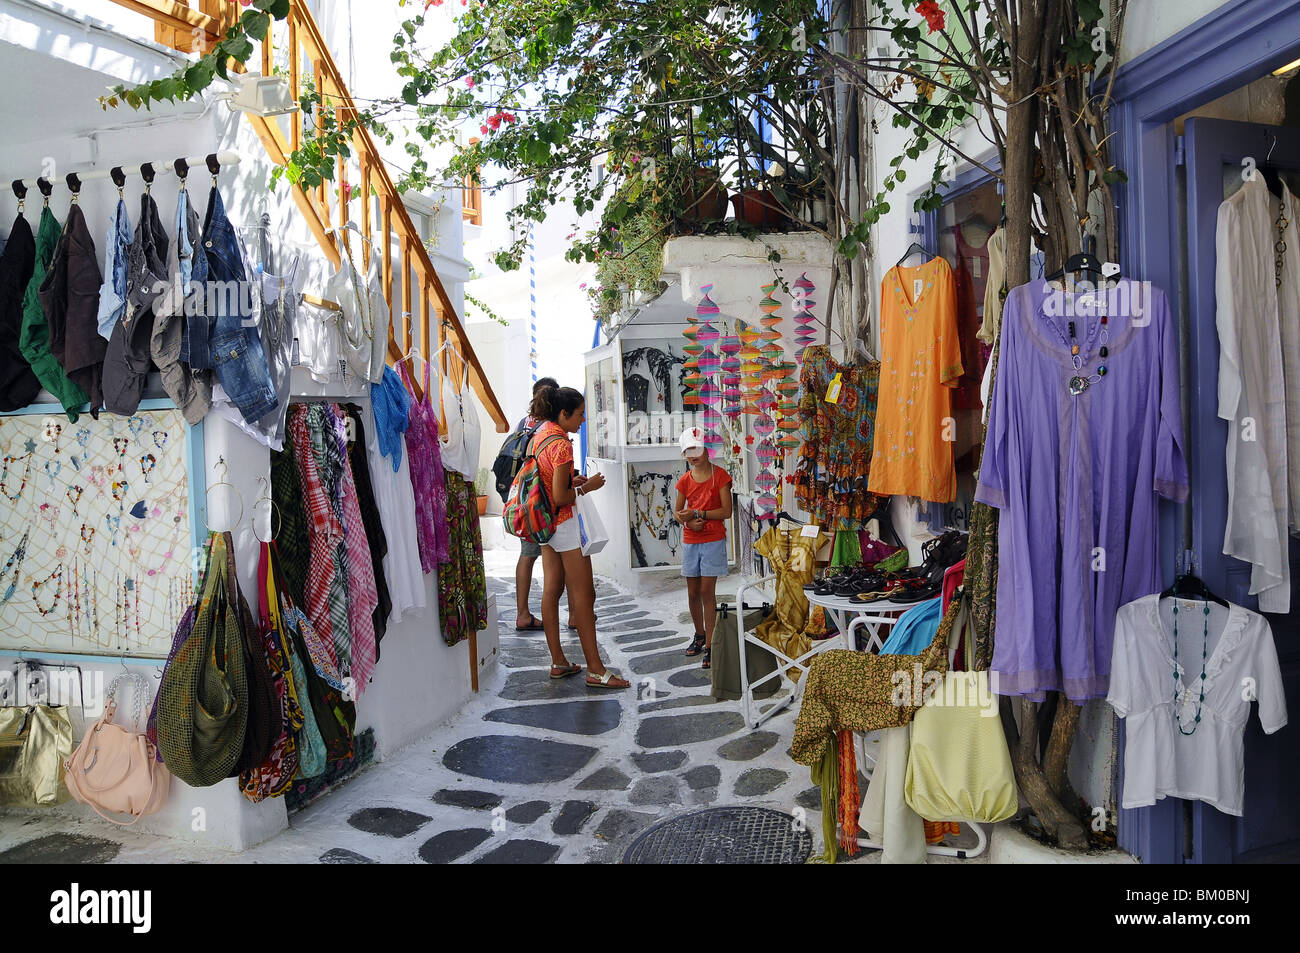 Les gens dans les ruelles de la ville, l'île de Mykonos, Cyclades, Grèce, l'Europe Banque D'Images